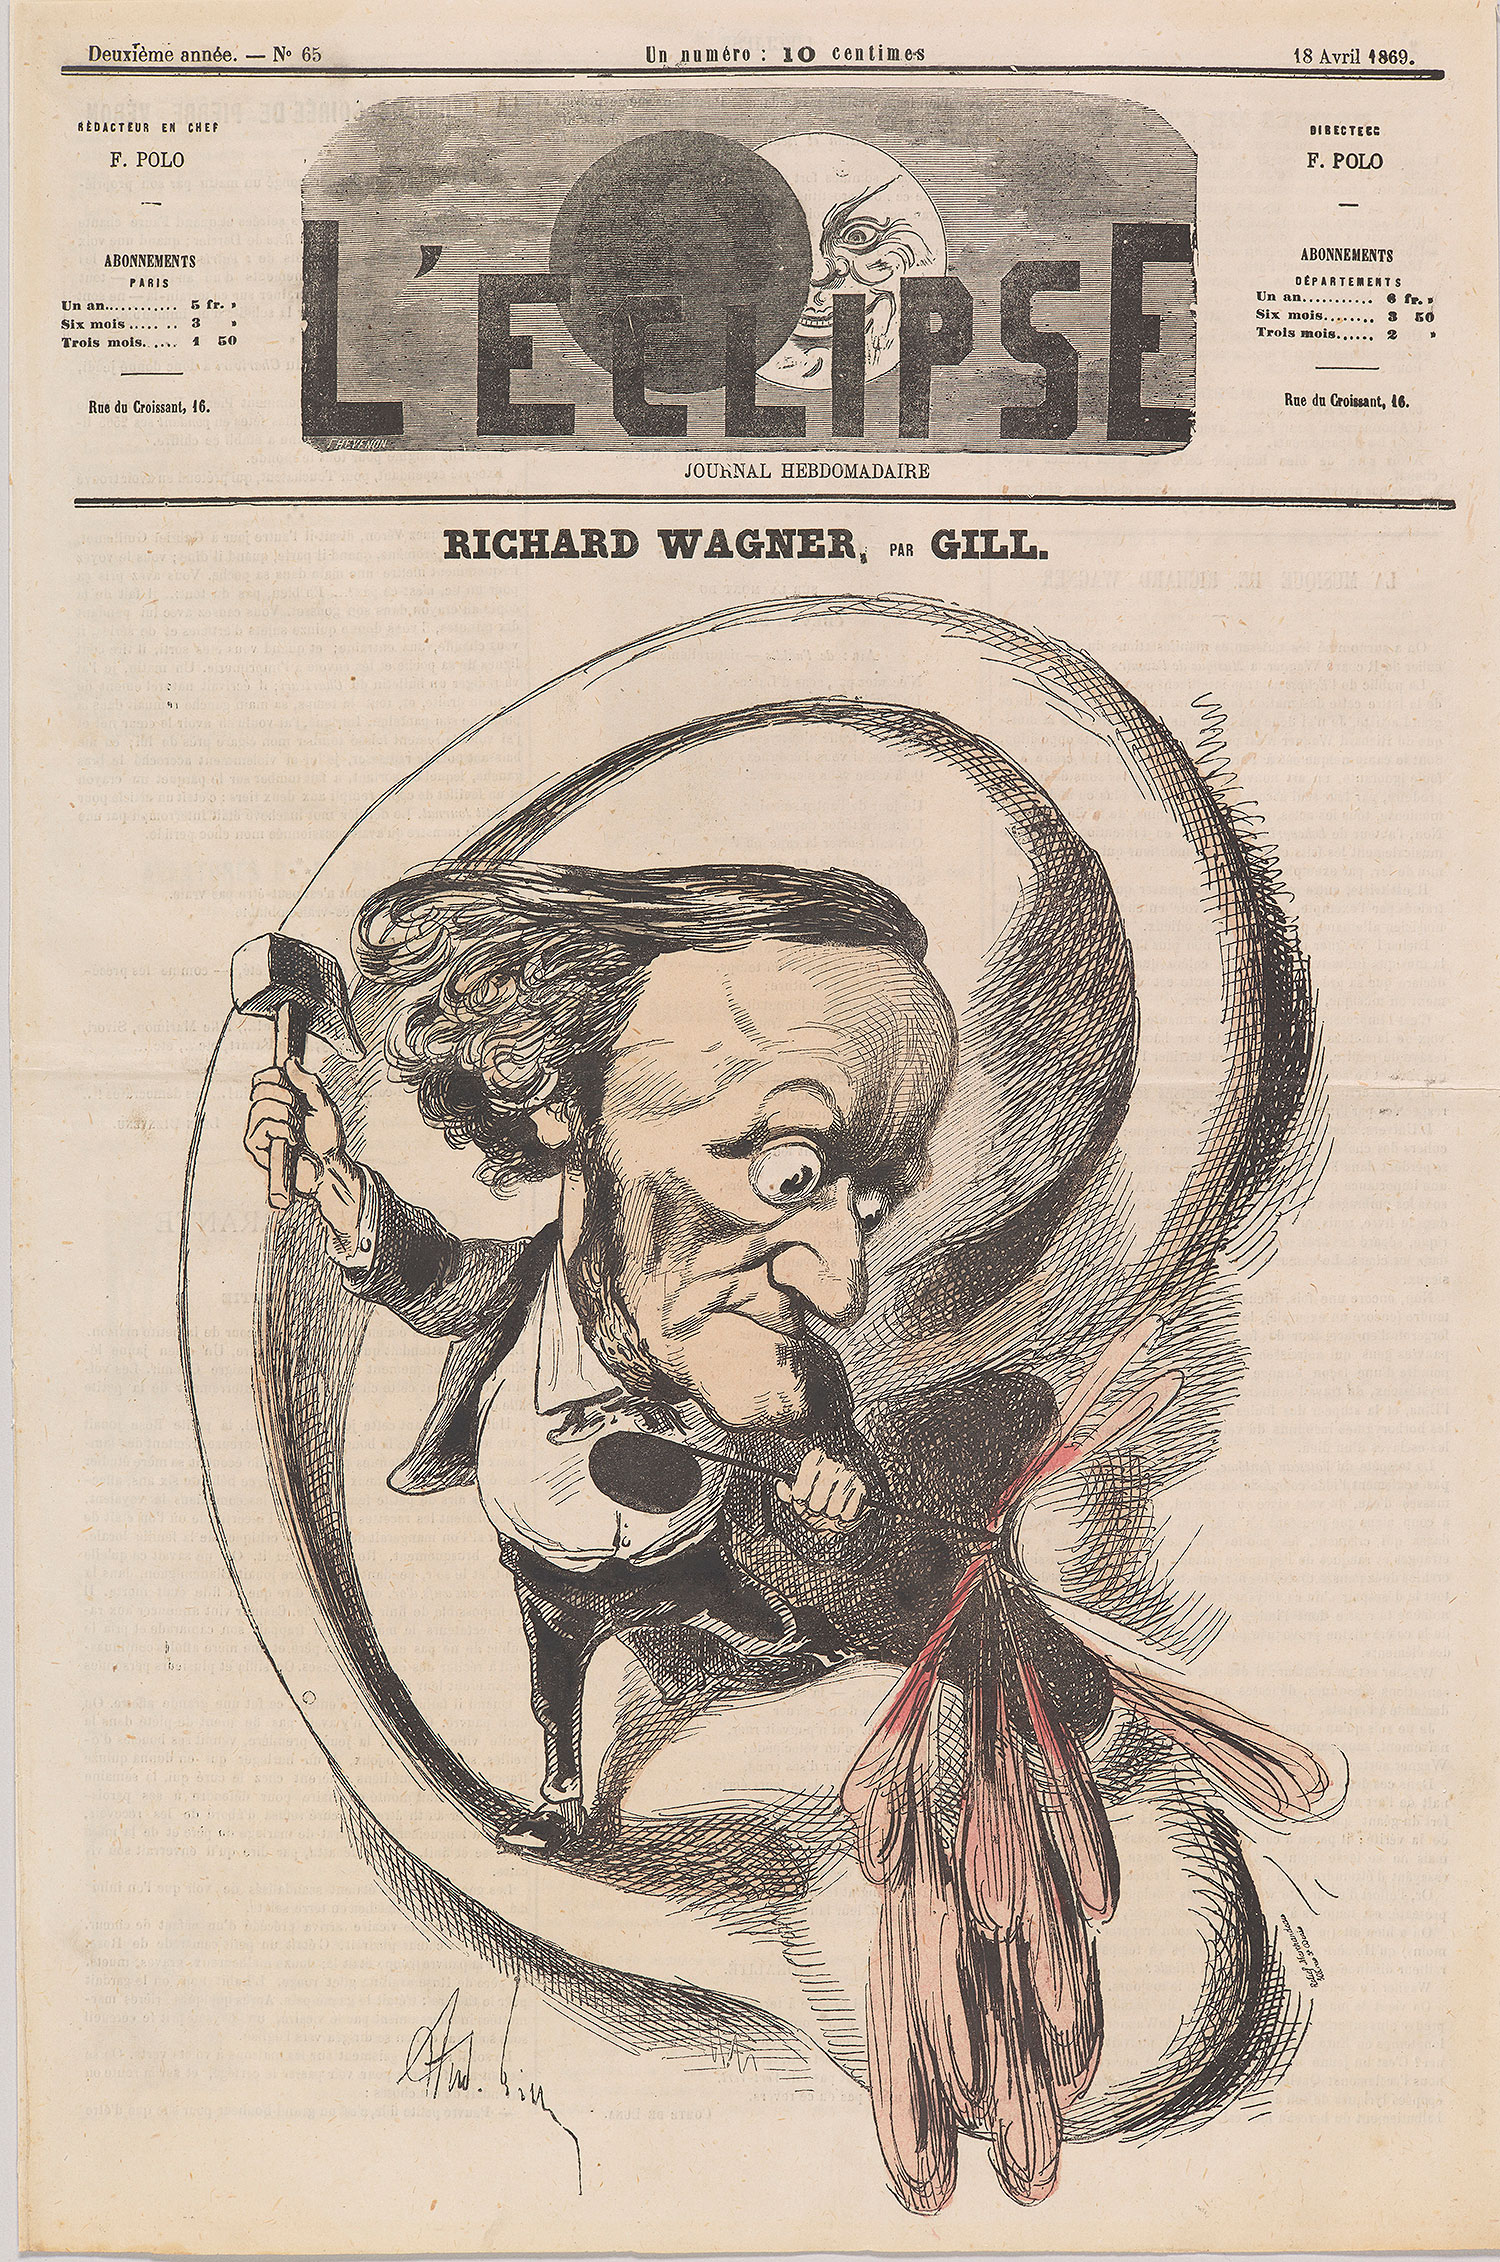 André Gill: Richard Wagner (caricature), L’Éclipse, April 18, 1869